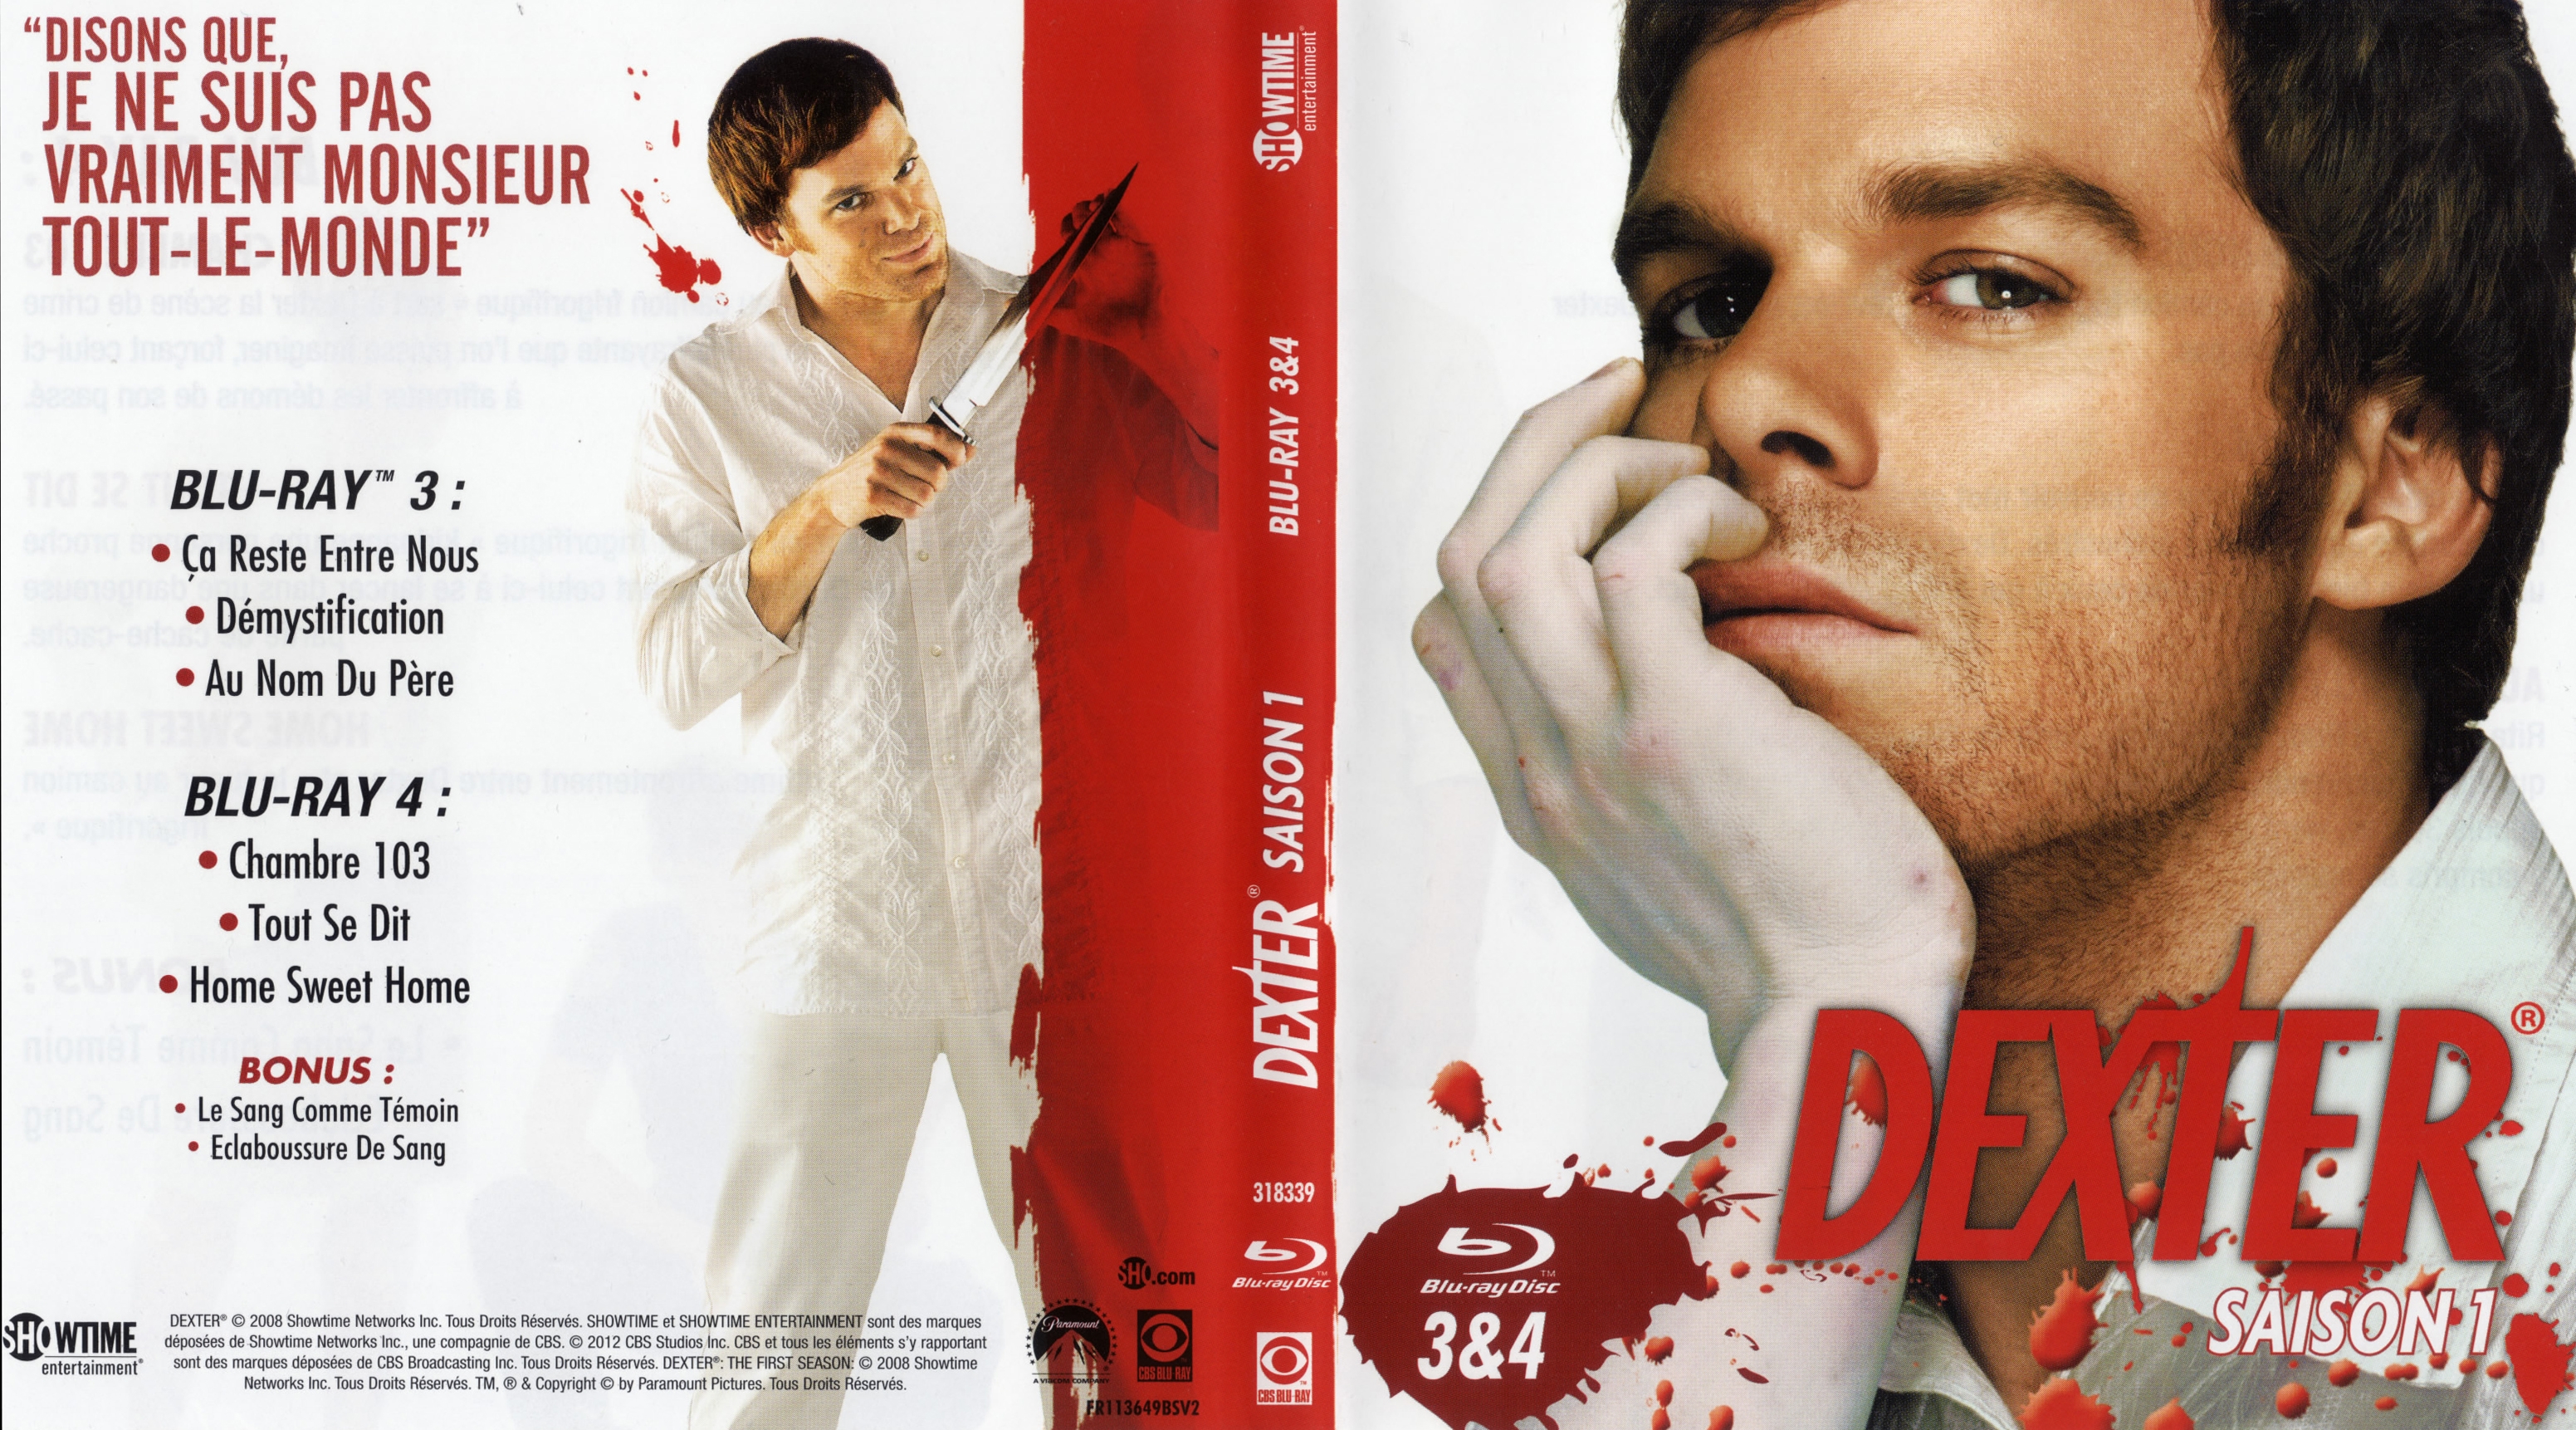 Jaquette DVD Dexter saison 1 DVD 2 (BLU-RAY)